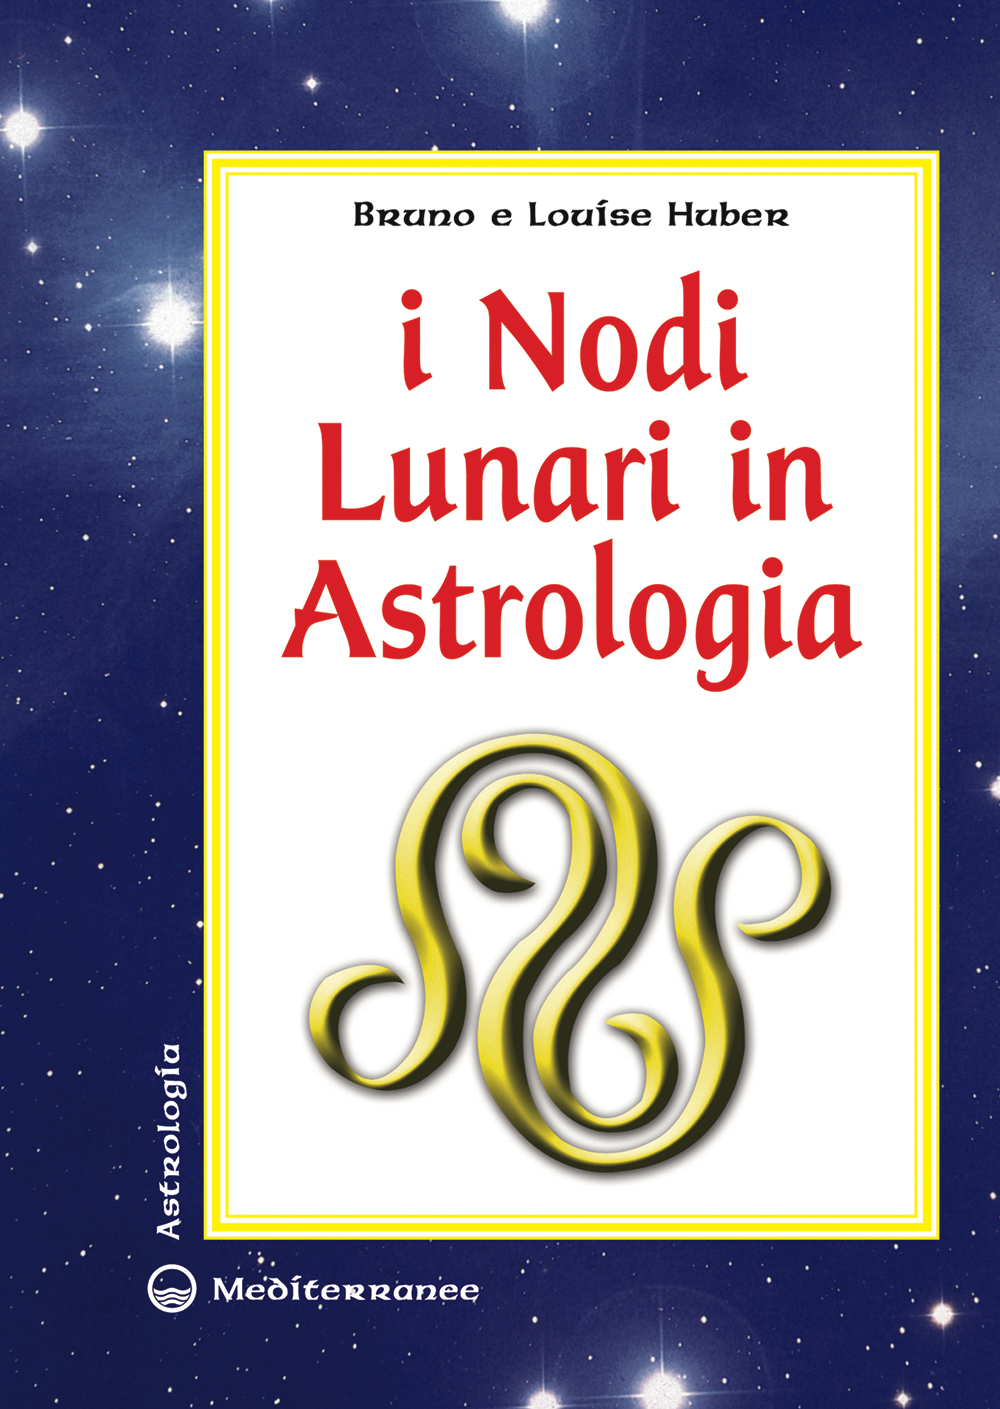 Libri Bruno Huber / Louise Huber - I Nodi Lunari In Astrologia NUOVO SIGILLATO, EDIZIONE DEL 10/07/2009 SUBITO DISPONIBILE